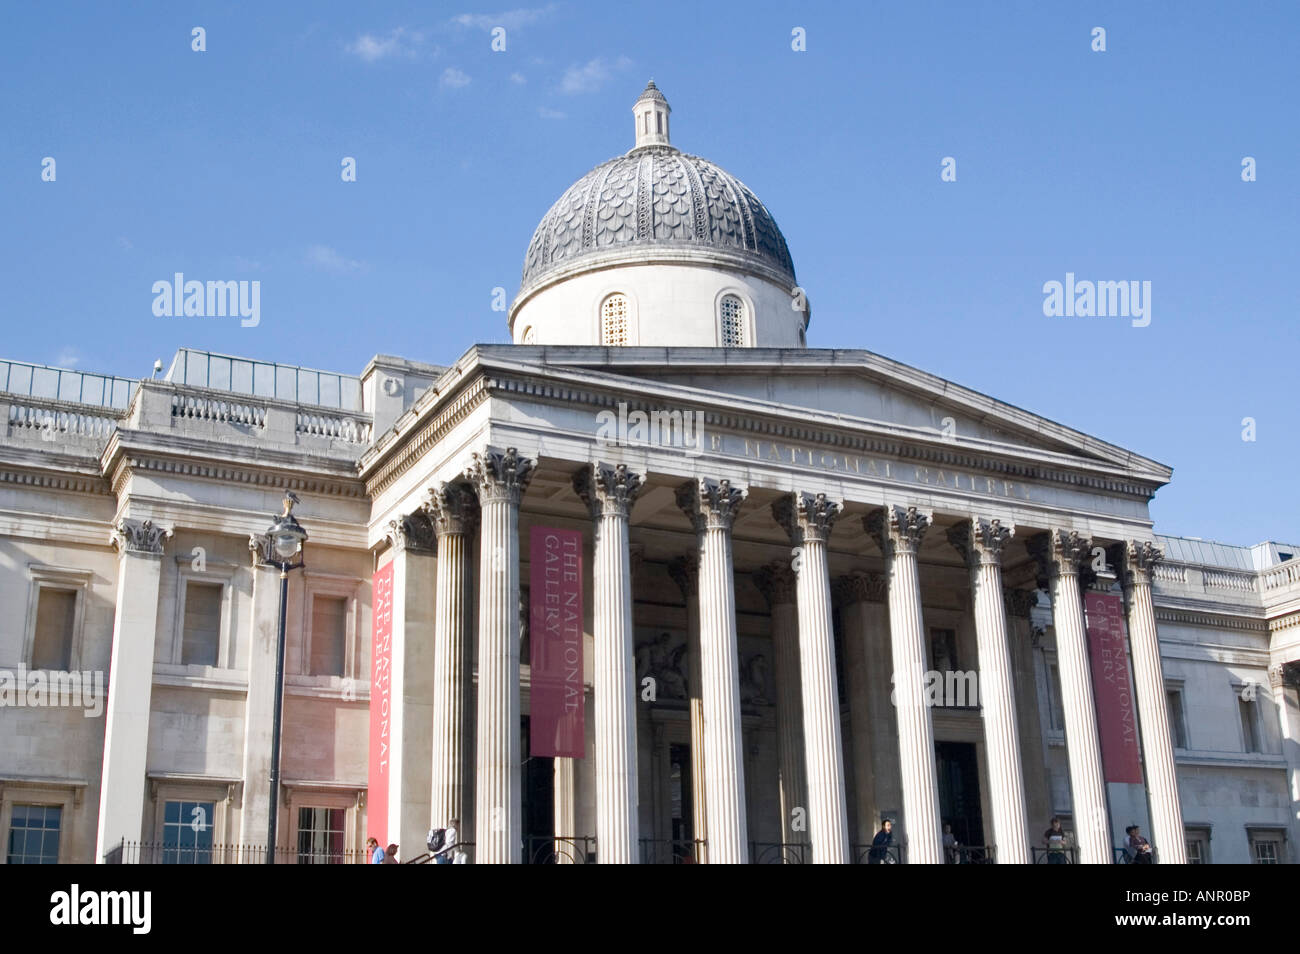 La National Art Gallery à Trafalgar Square dans le centre de Londres, Angleterre Banque D'Images